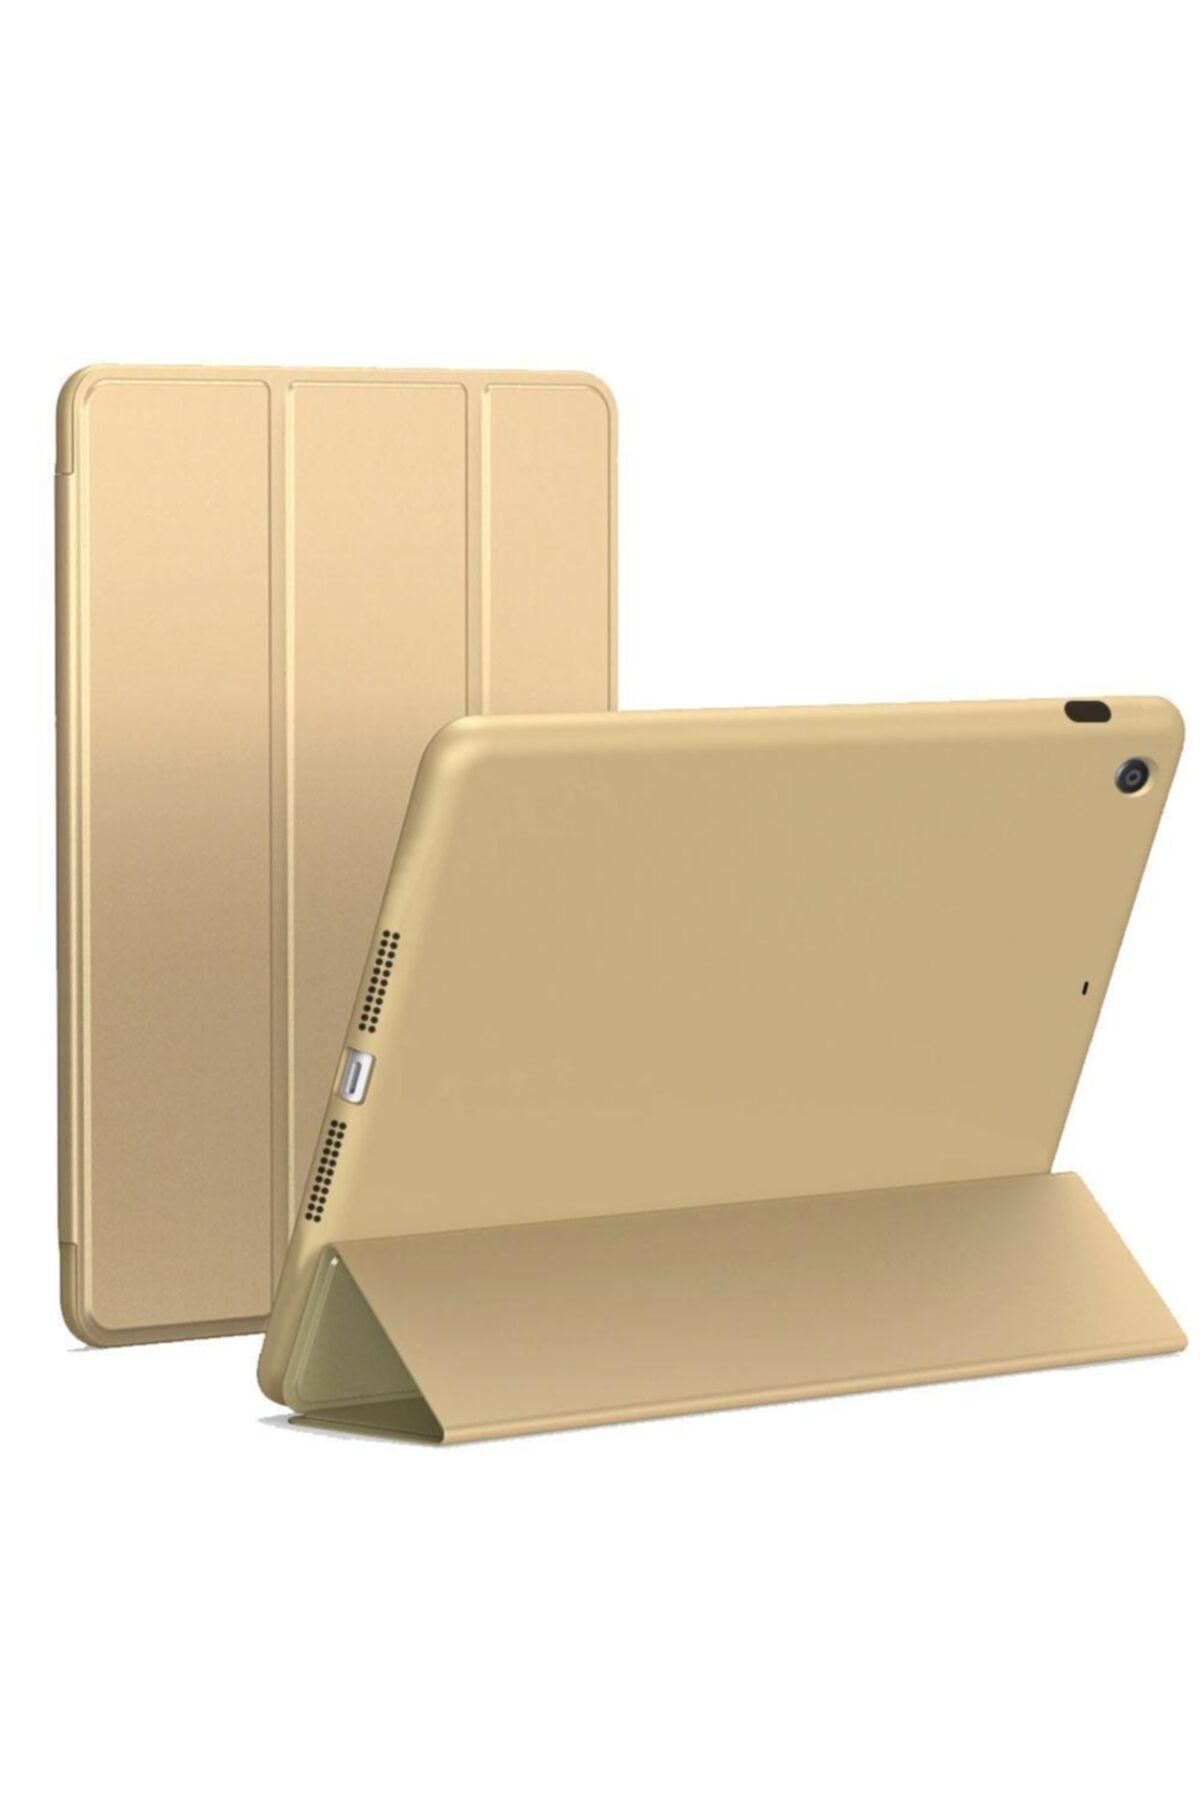 Smart Tech Apple Ipad 5 Ve 6 Nesil 9,7 Inç Smart Cover Standlı Tablet Kılıfı Gold